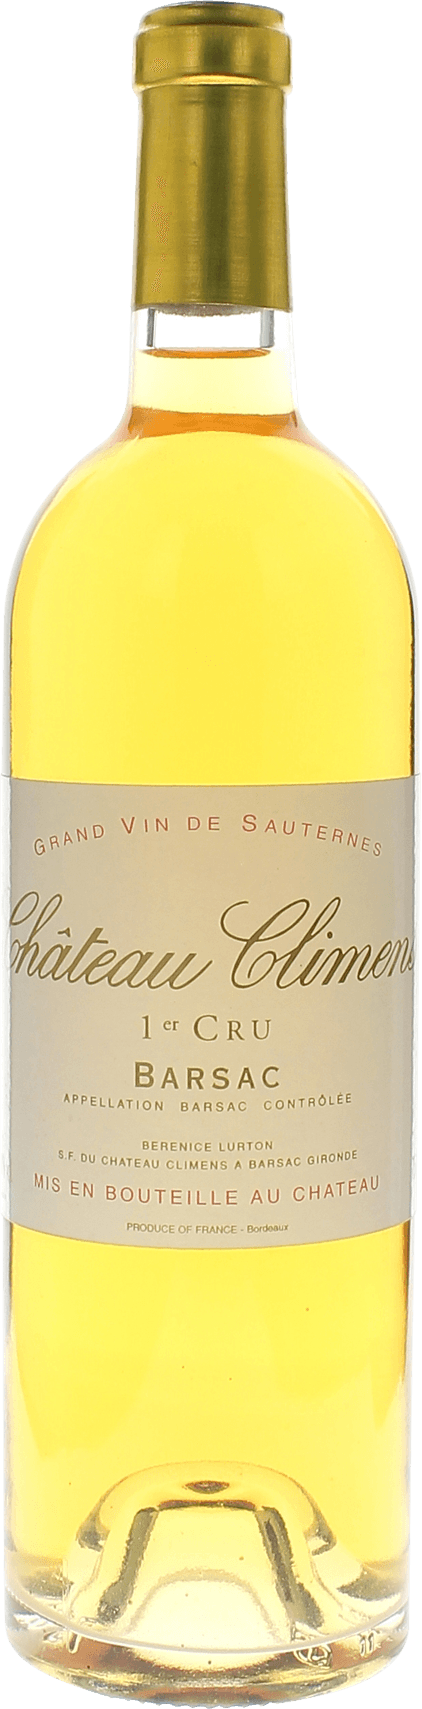 Climens 1999 1er cru Sauternes Barsac, Bordeaux blanc